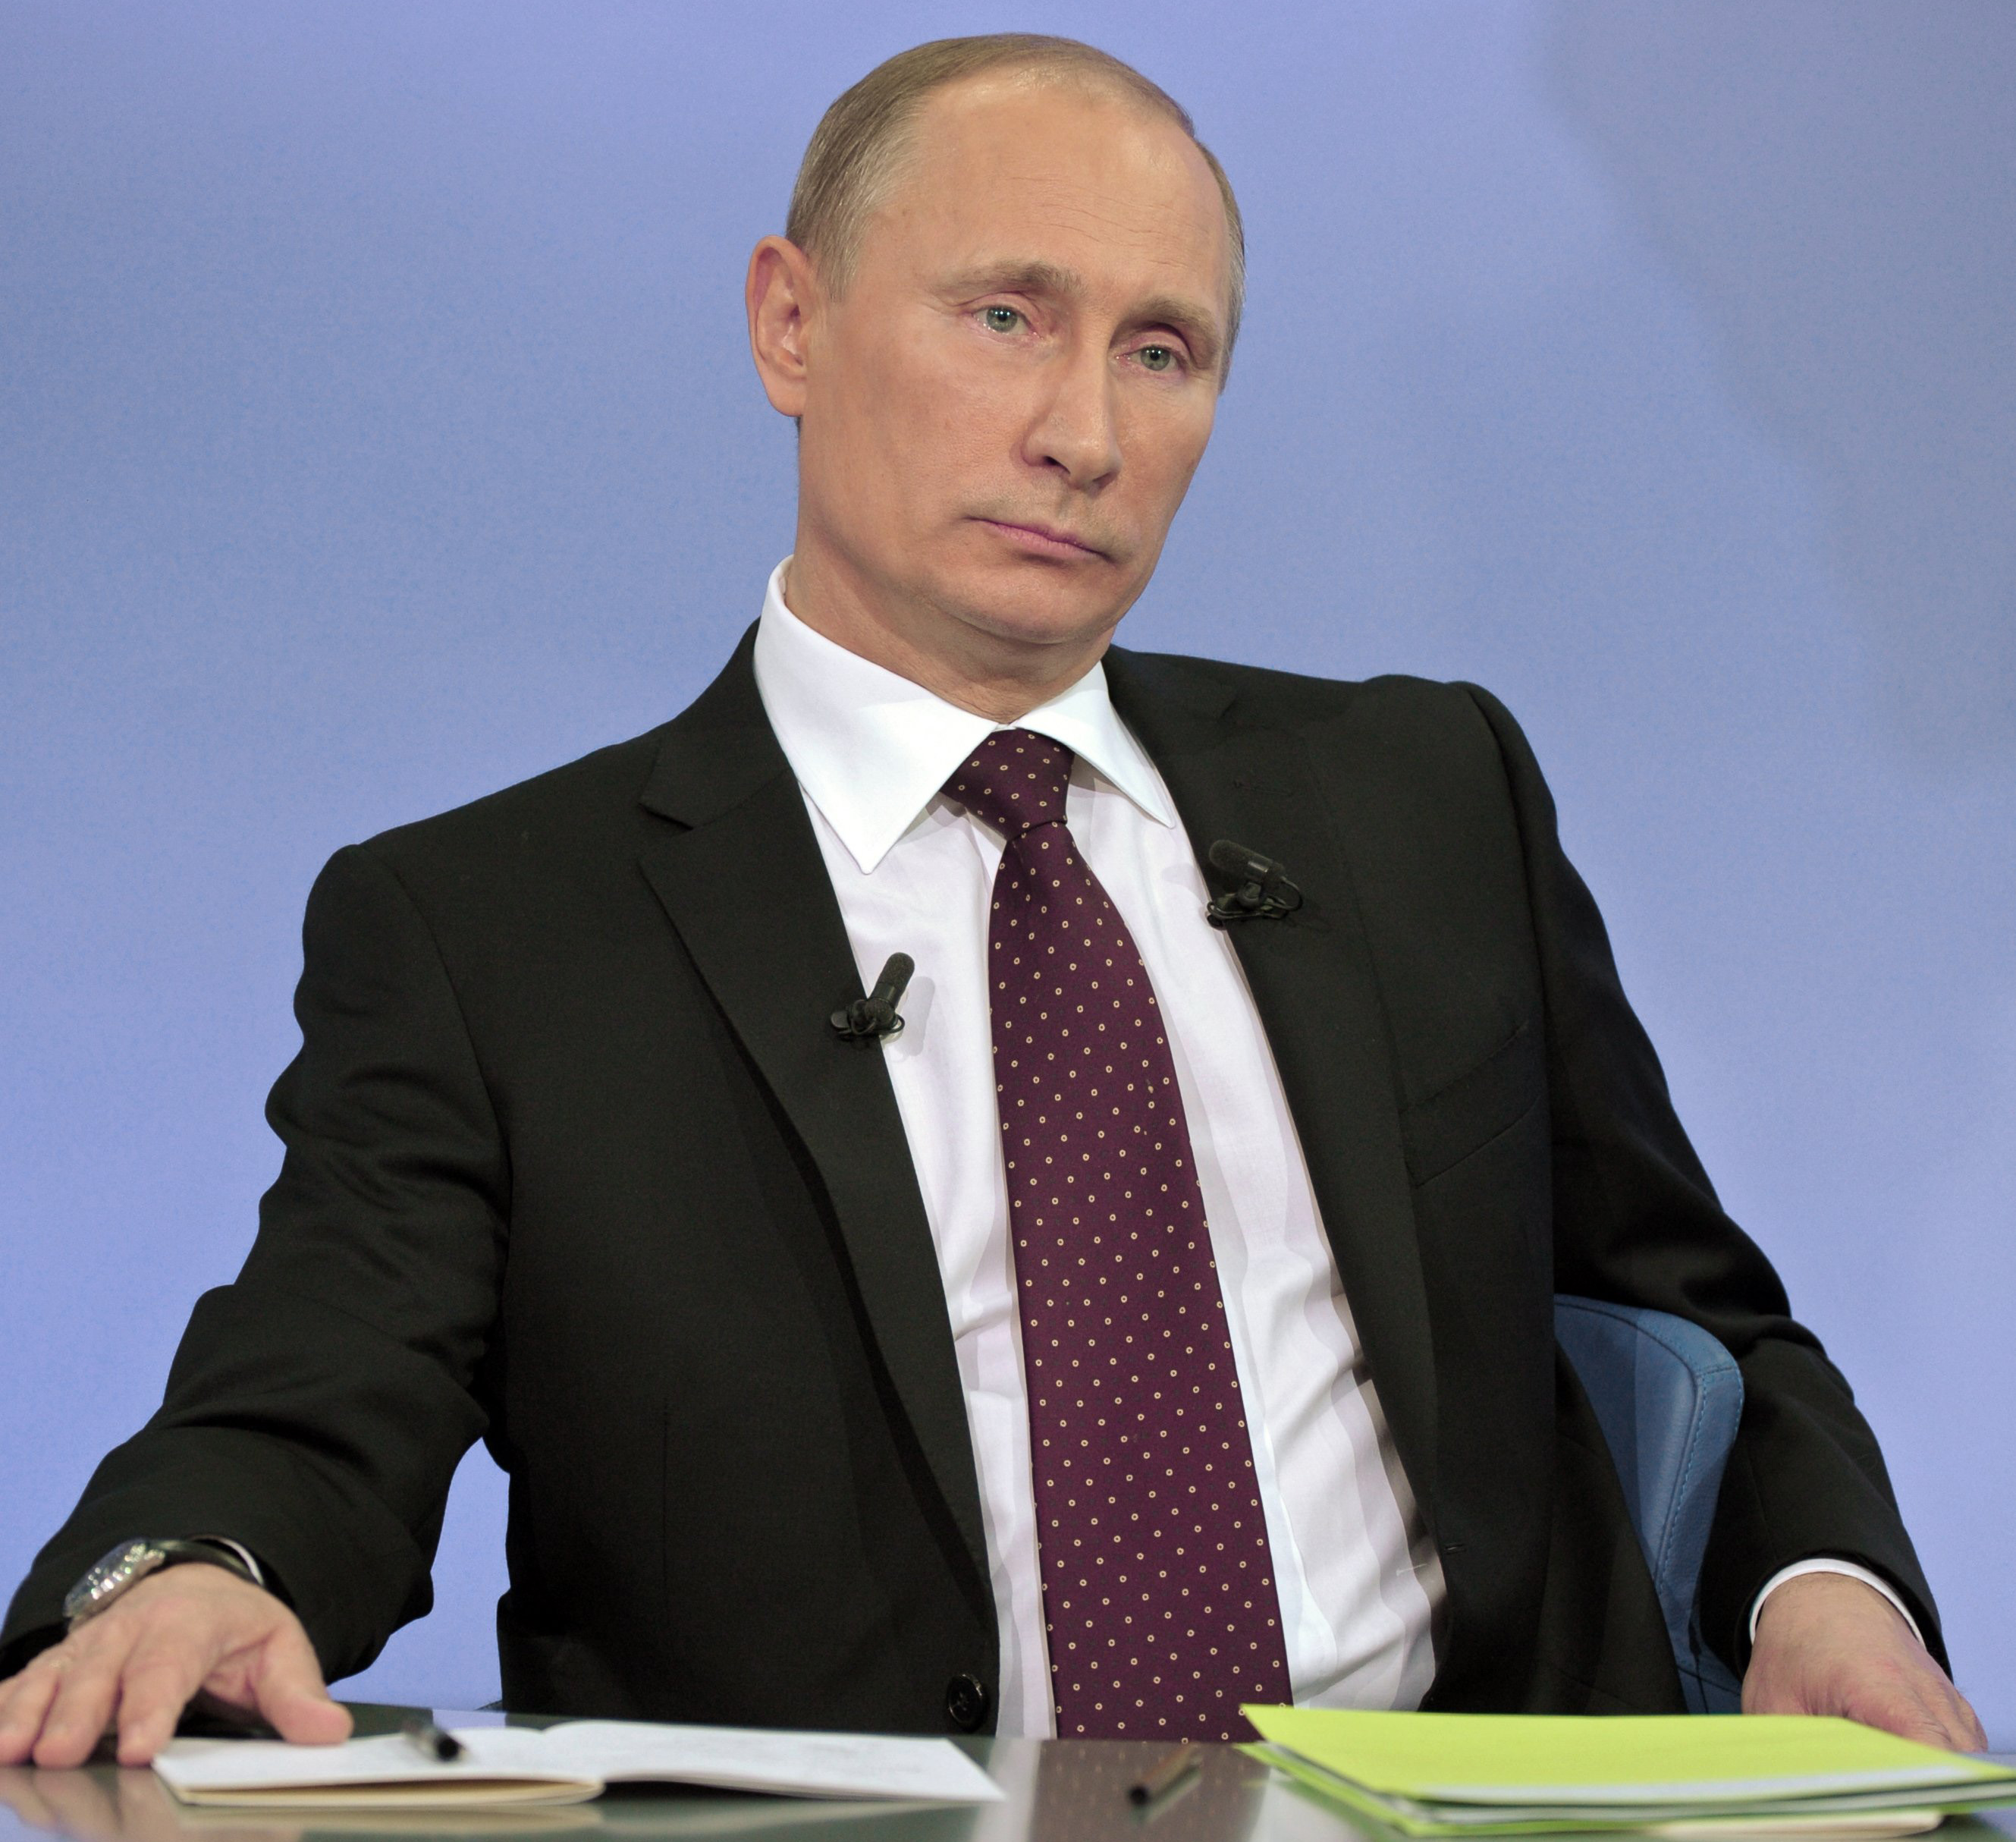 Vladimir Putin cc Wikicommons